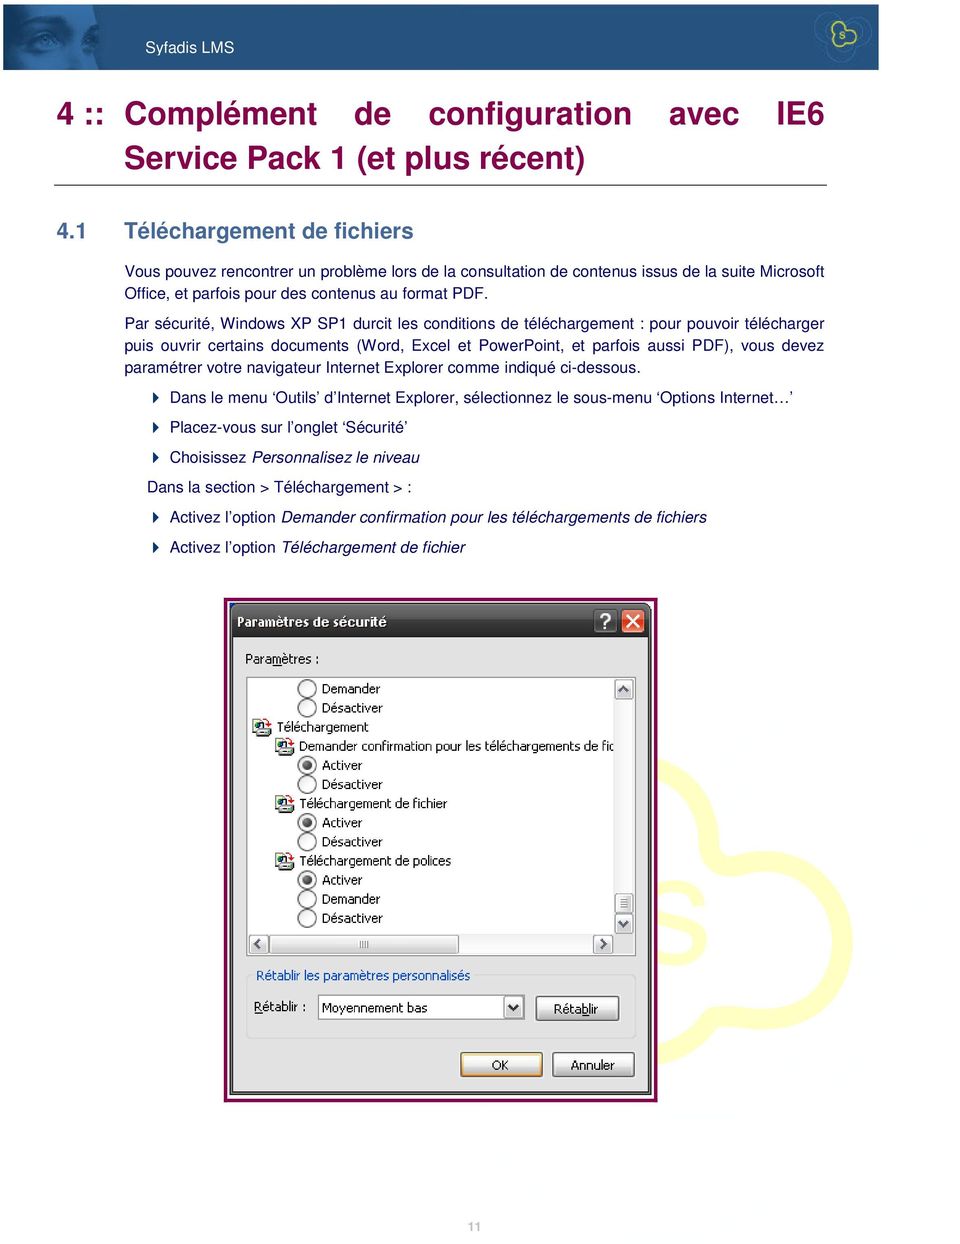 Par sécurité, Windows XP SP1 durcit les conditions de téléchargement : pour pouvoir télécharger puis ouvrir certains documents (Word, Excel et PowerPoint, et parfois aussi PDF), vous devez paramétrer